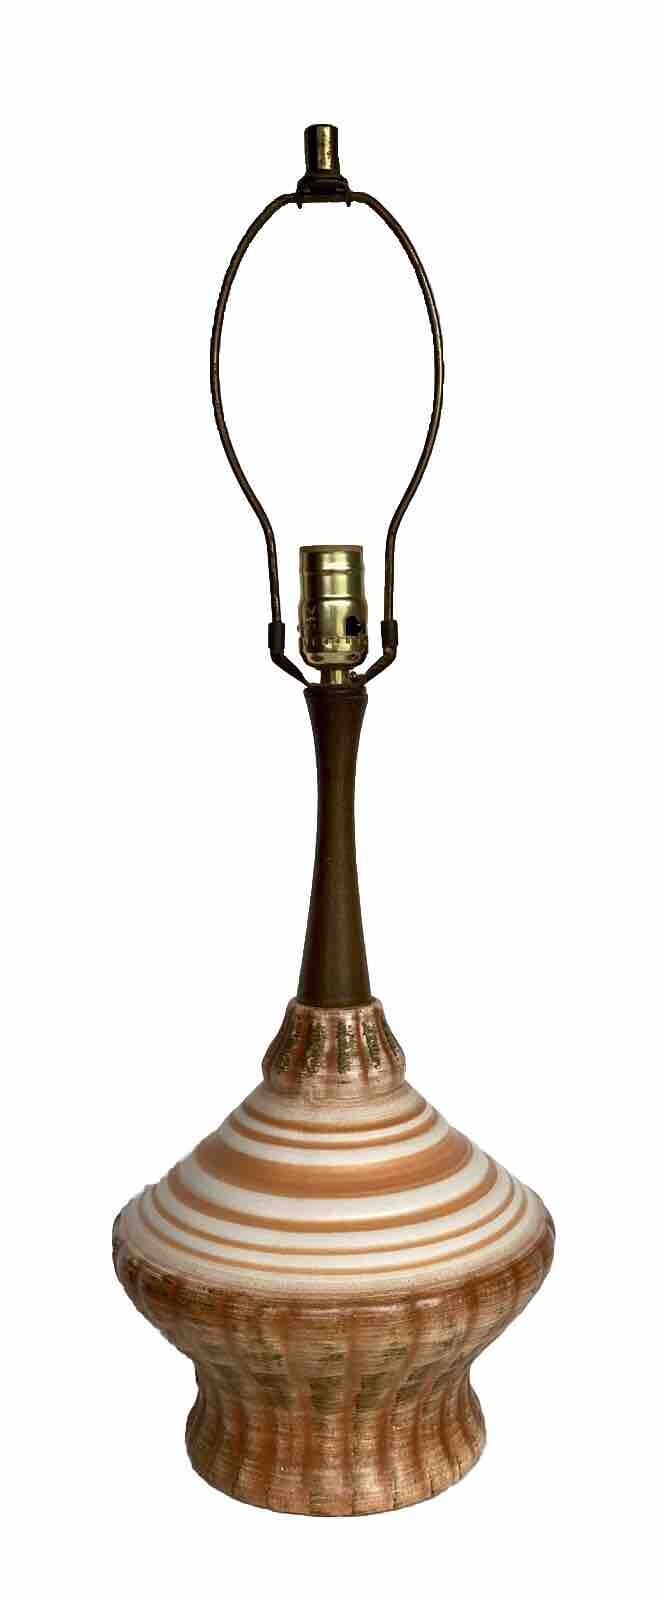 Vintage Mid-Century Modern Table Lamp, Danish Modern Ceramic & Teak Wood 18